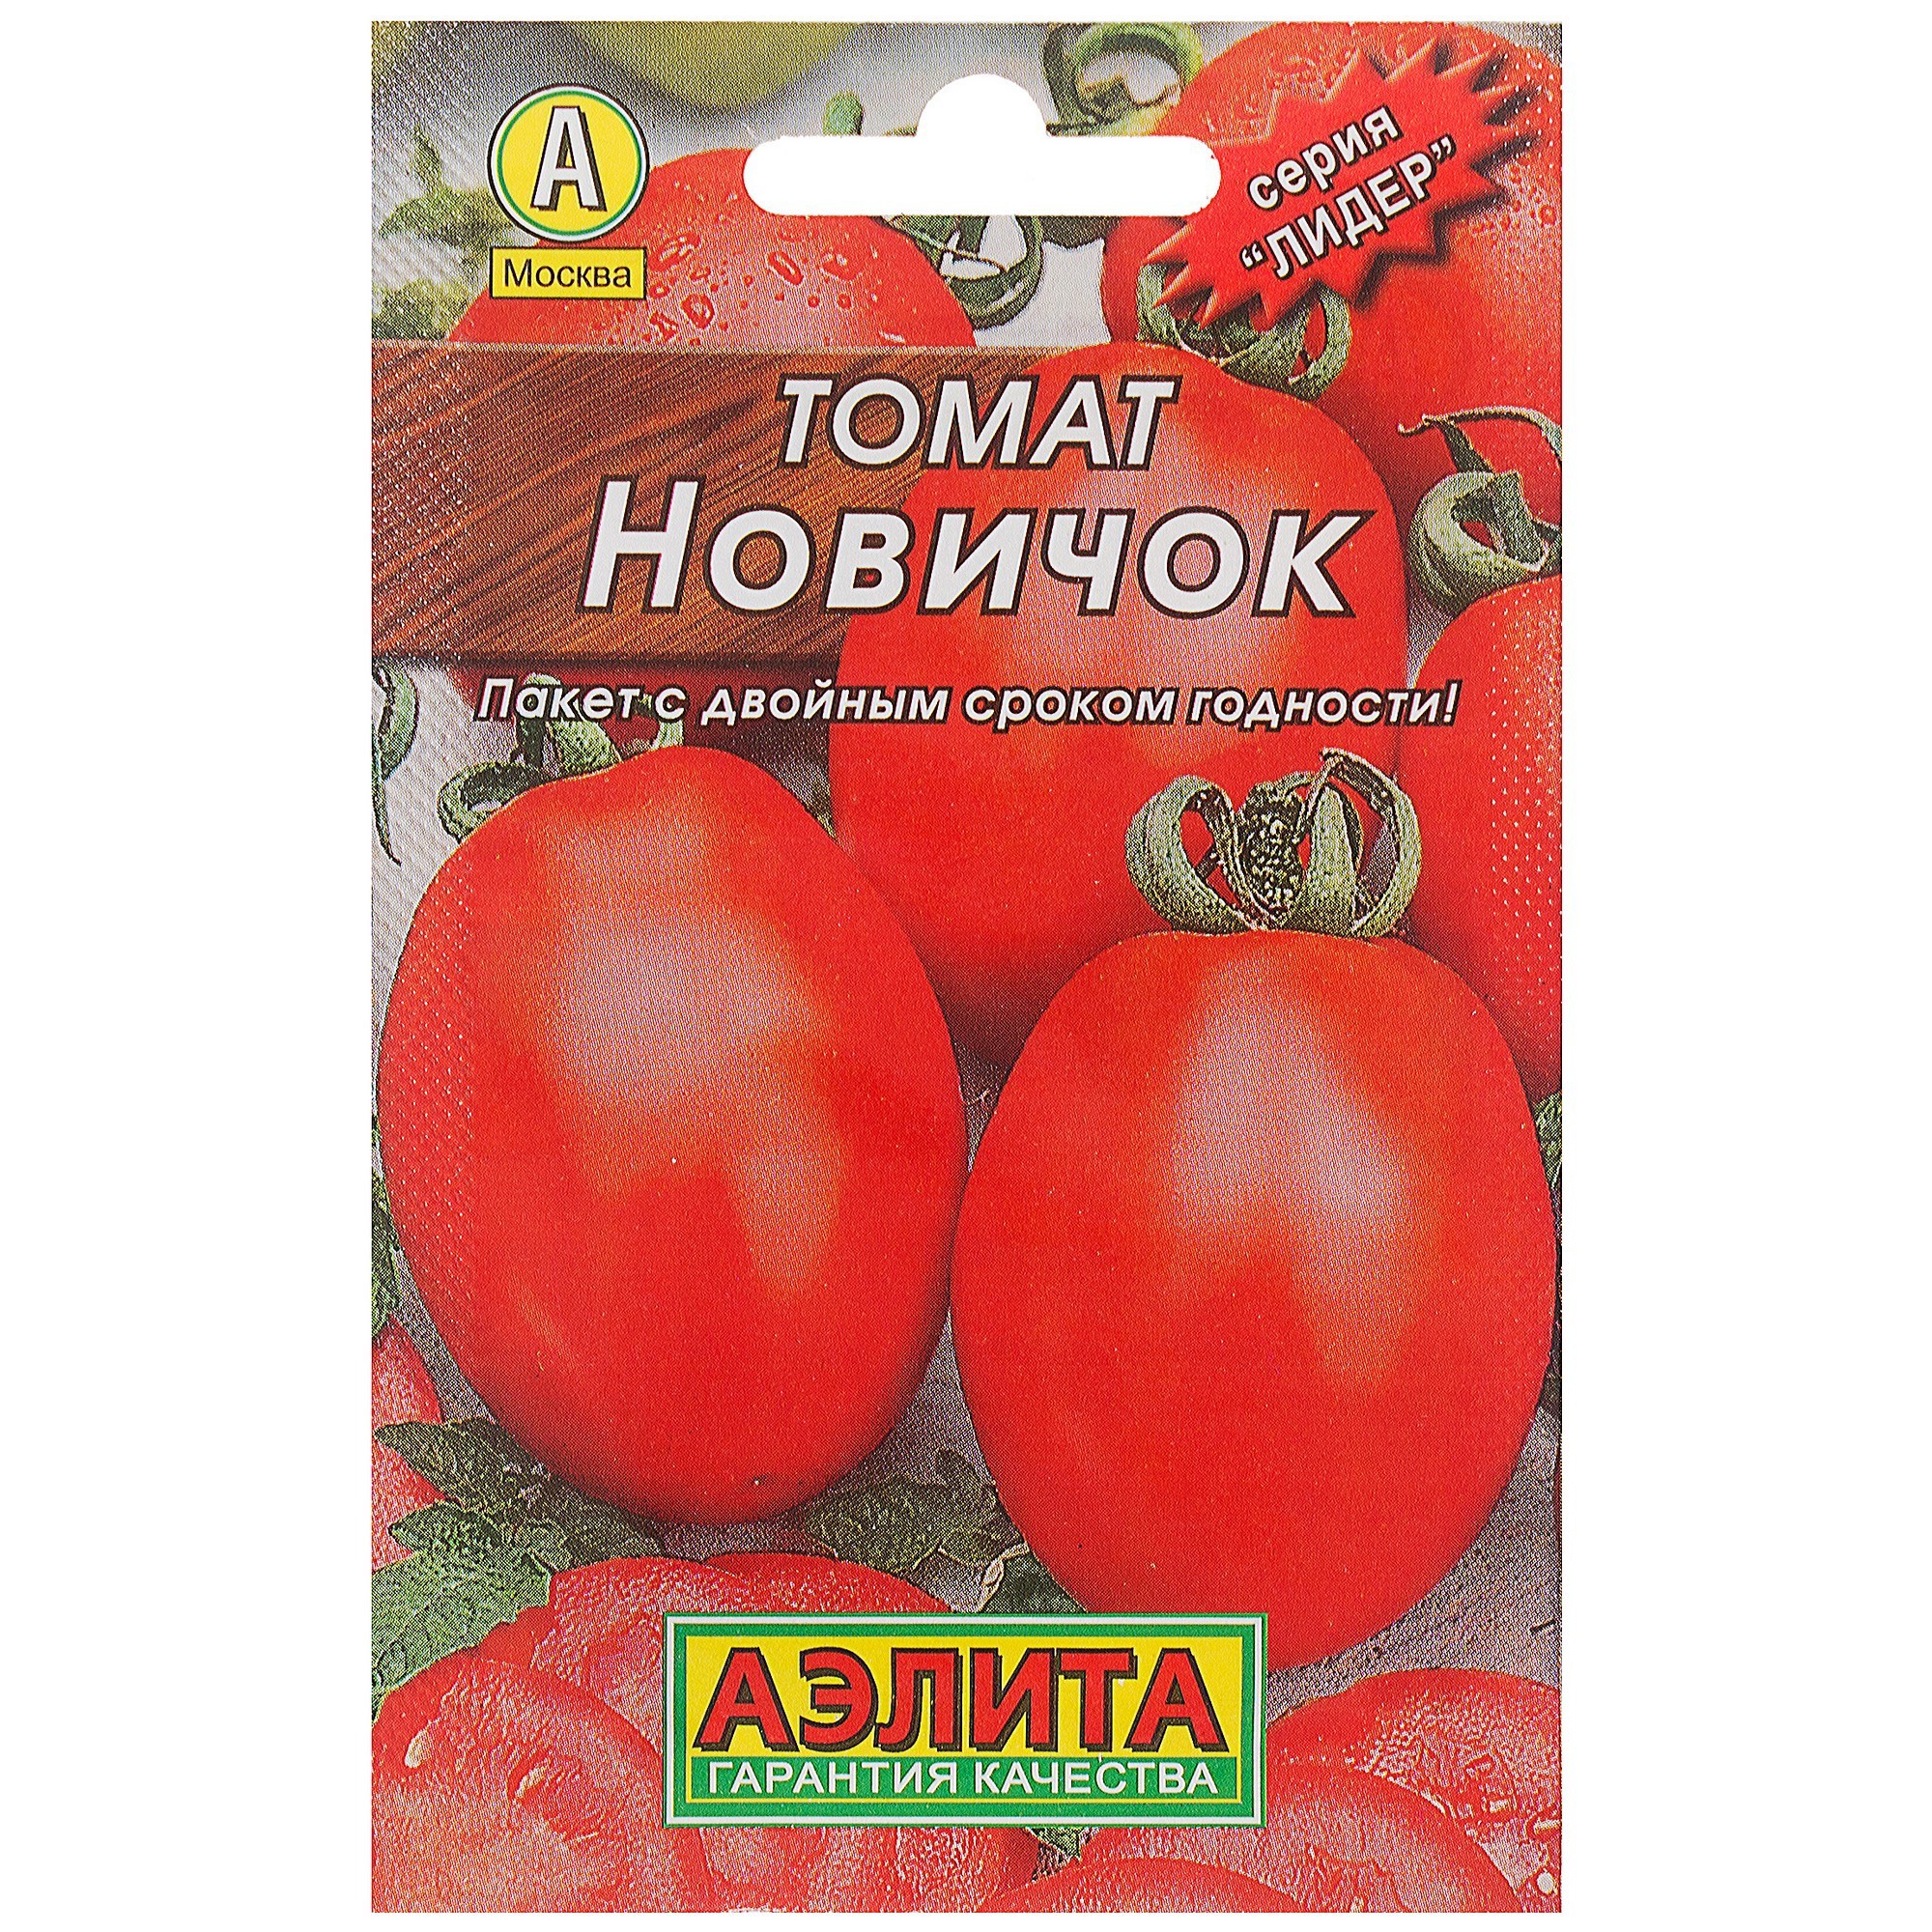 Семена Томат «Новичок» (Лидер) в Хабаровске – купить по низкой цене винтернет-магазине Леруа Мерлен